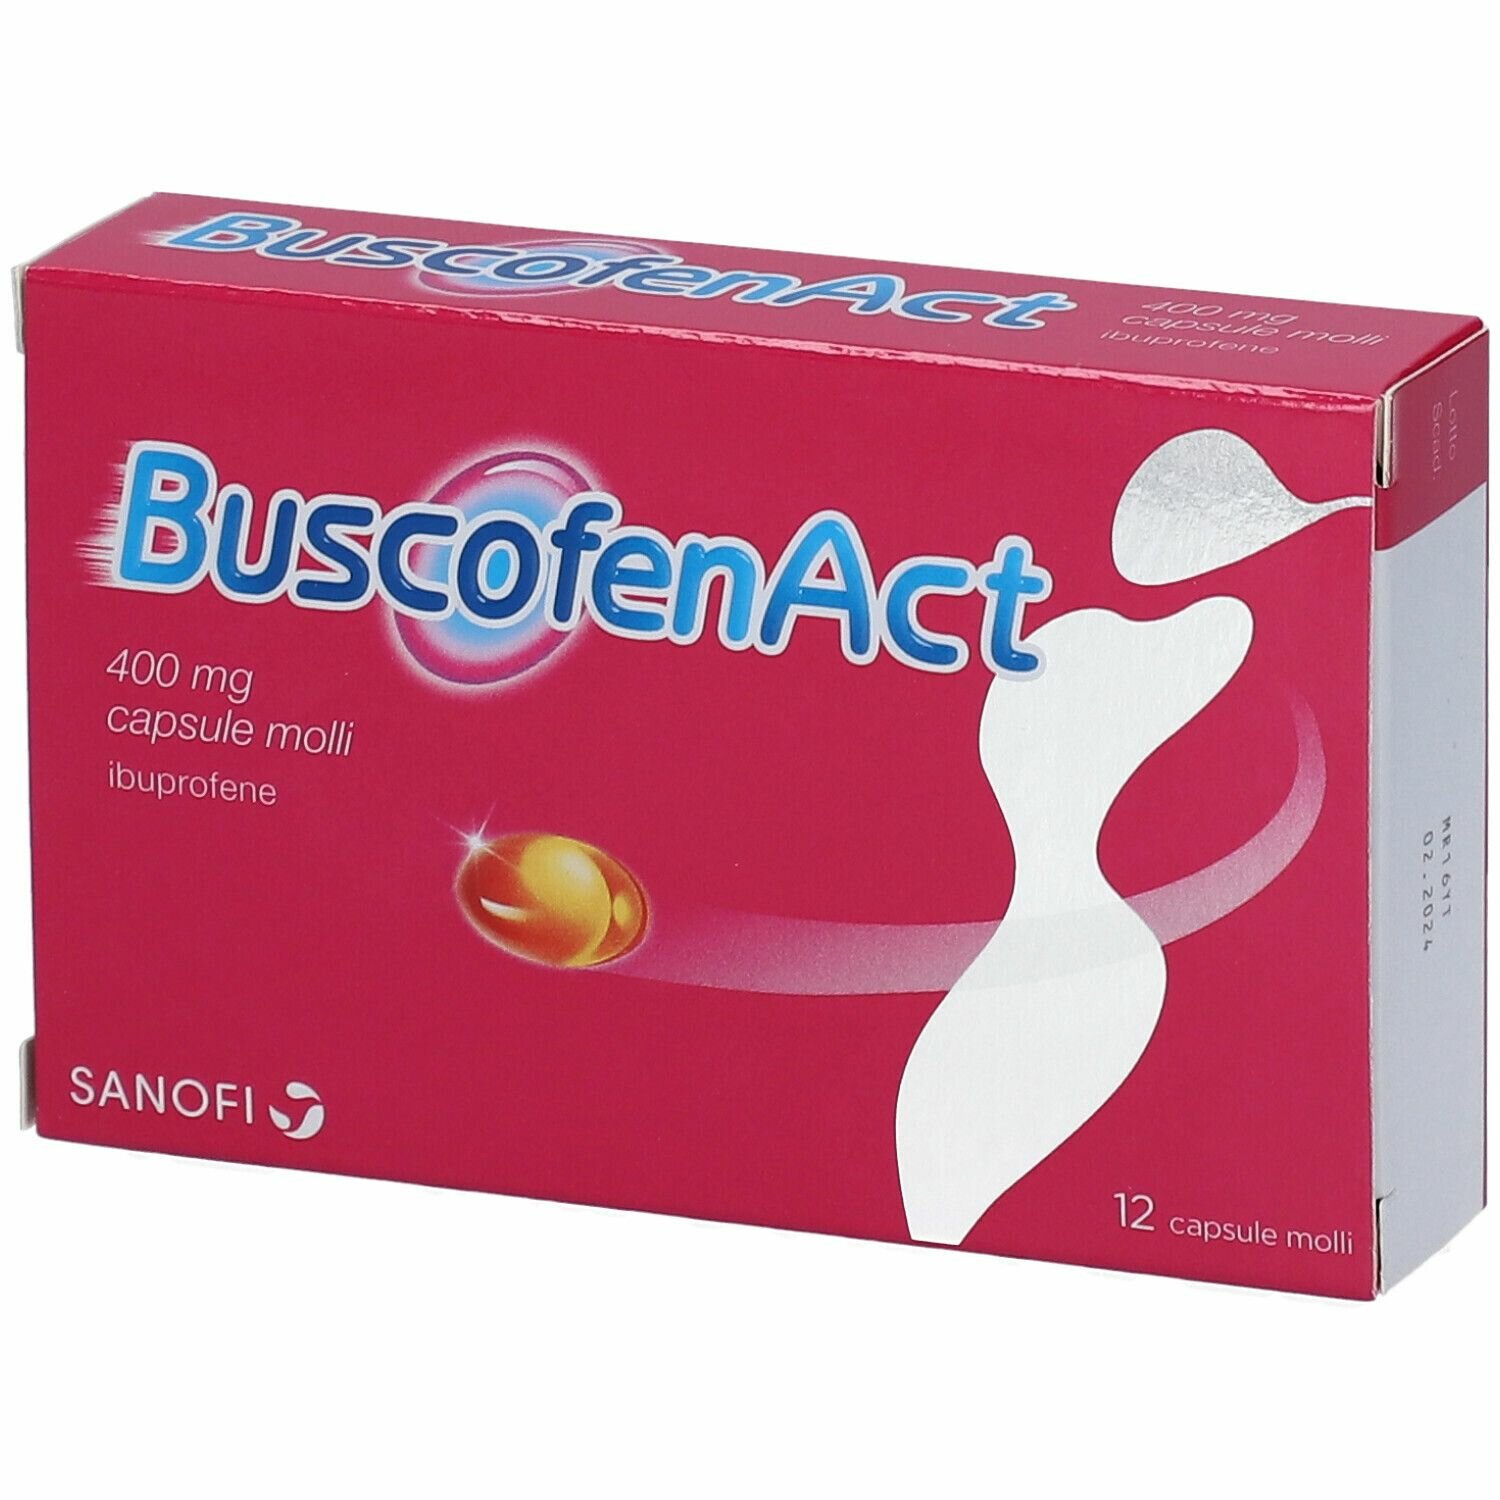 Buscofen active 400 mg ibuprofene 12 capsule molli img